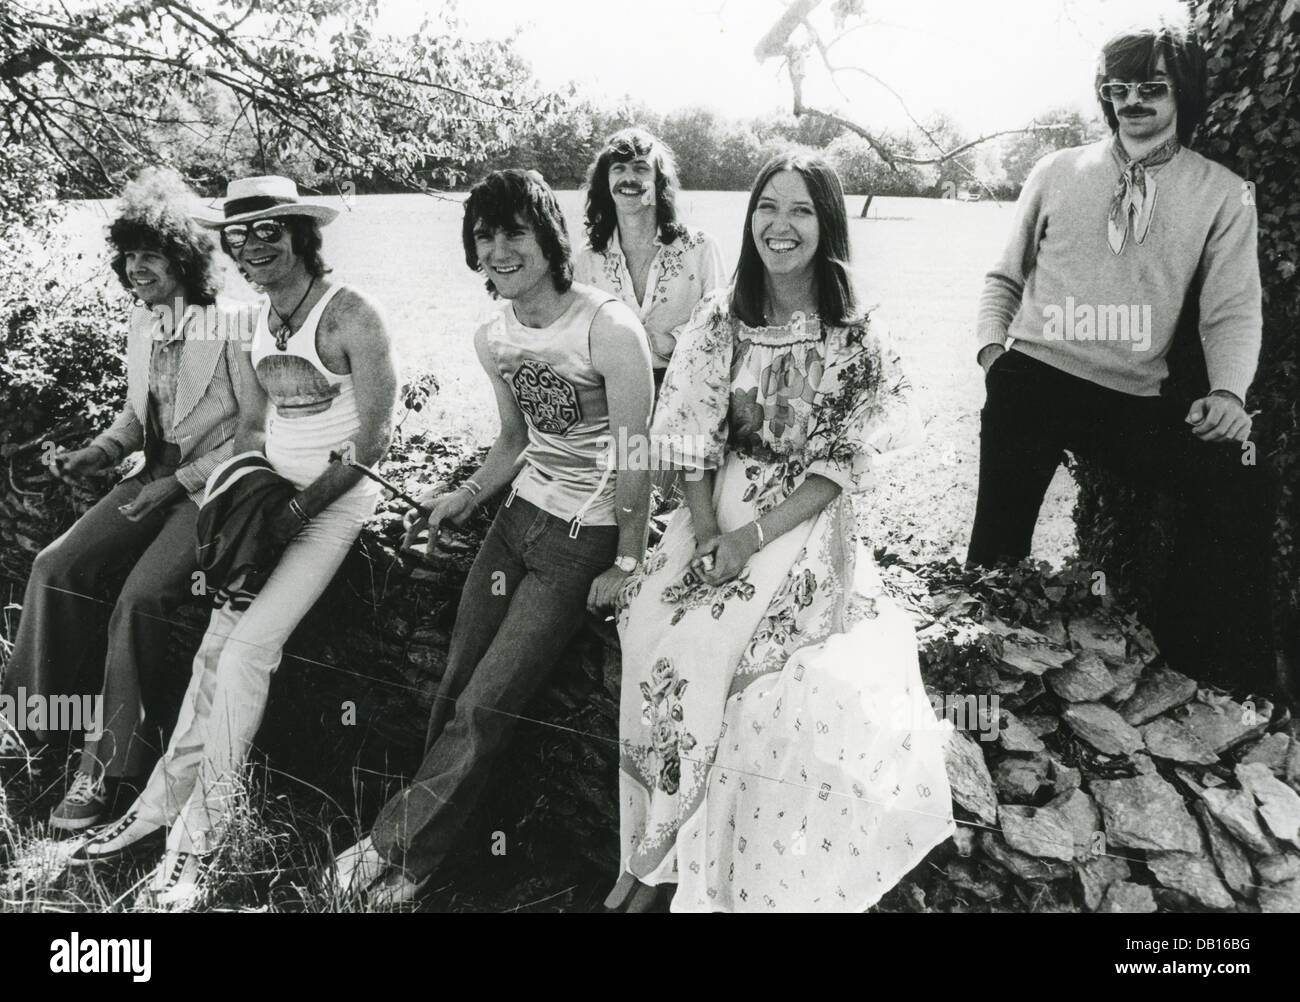 Promotion Steeleye Span photo de groupe folk britannique à propos de 1975 Banque D'Images